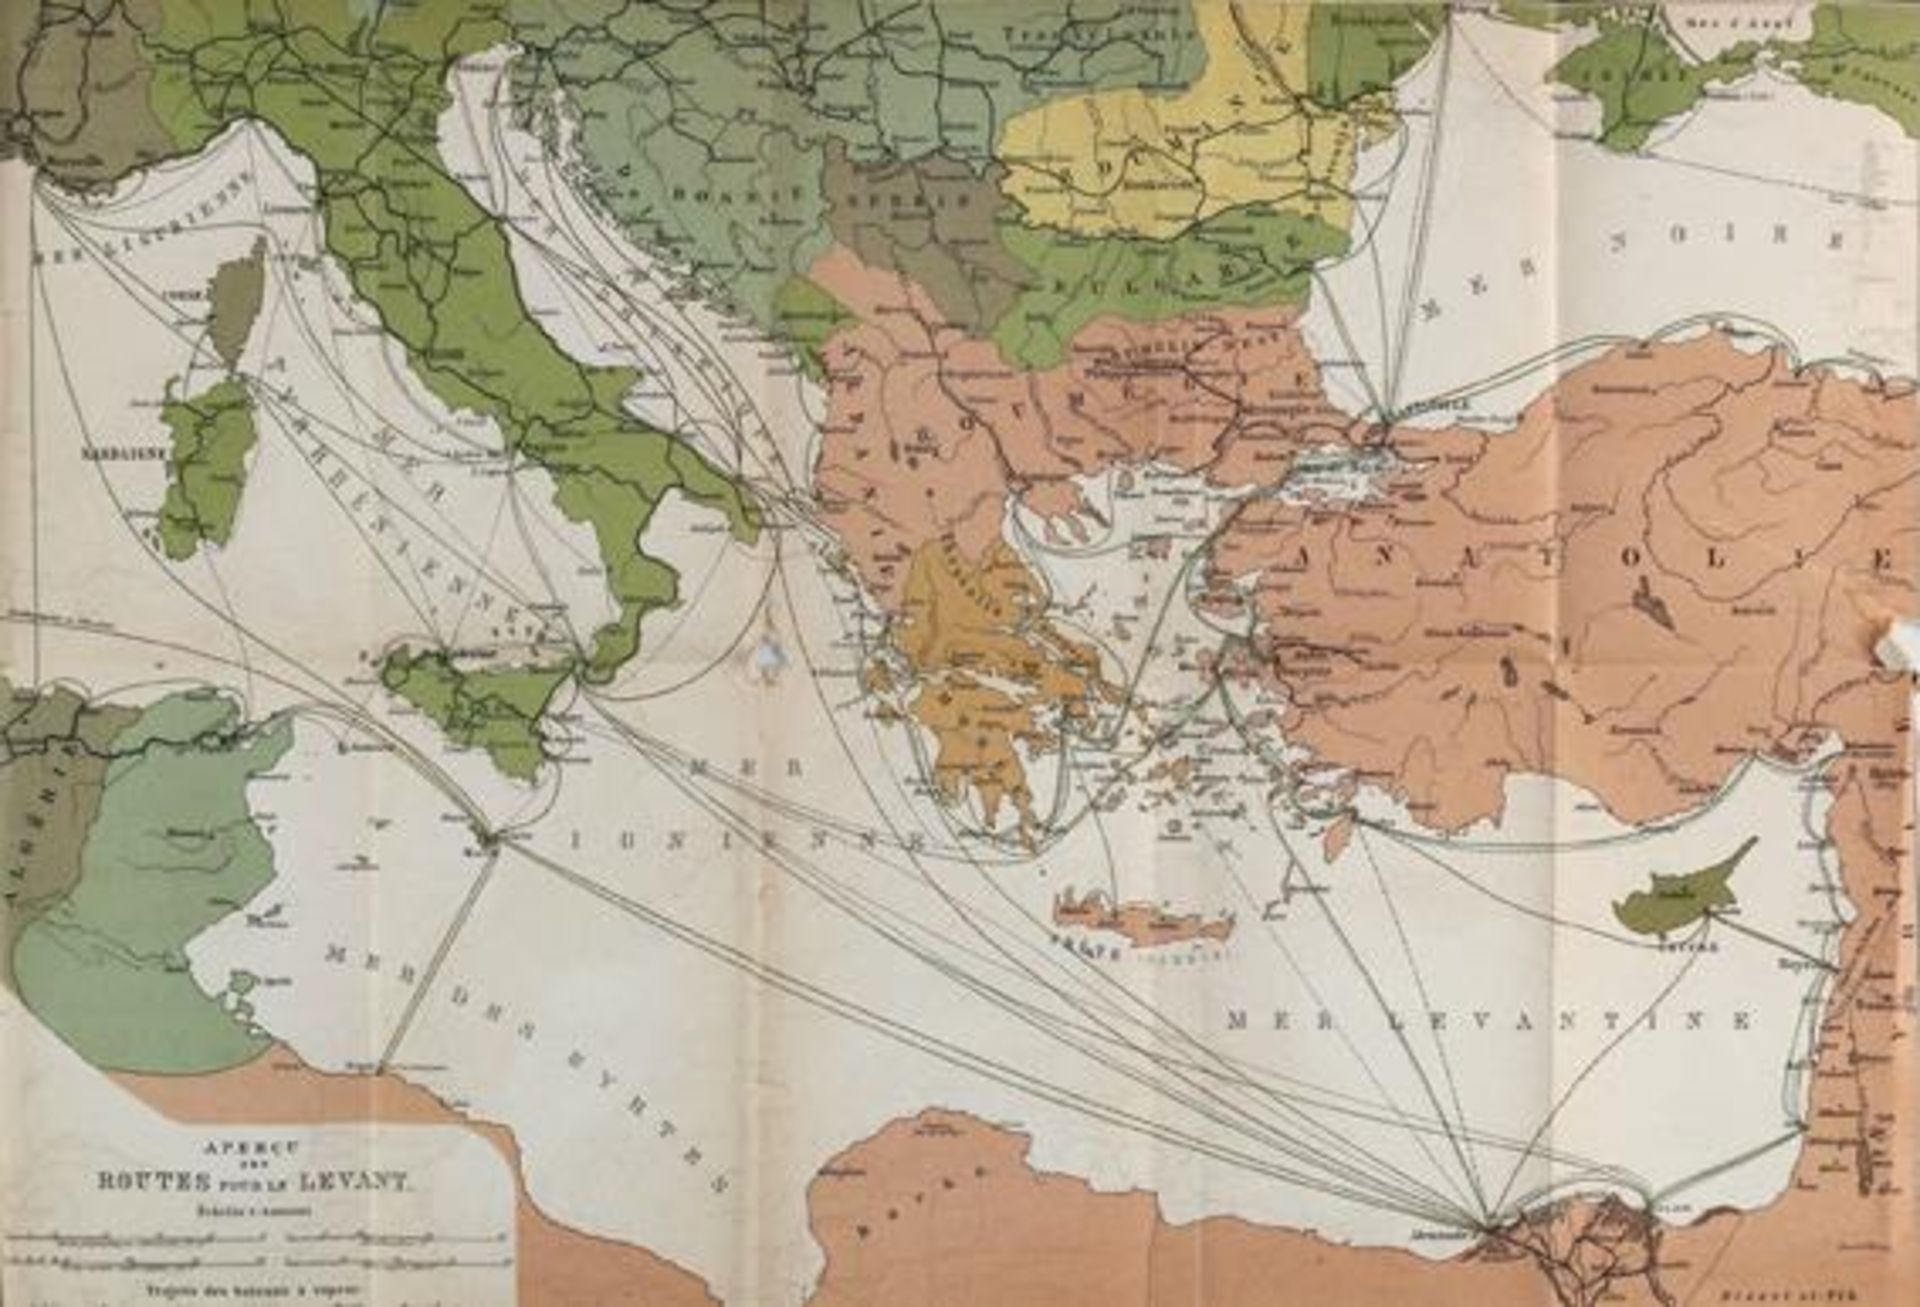 Griechenland.1. Aufl. Lpz. 1883. Mit 1 Panorama von Athen, 4 (von 6) Karten, 7 Plänen, 1 Grundriss